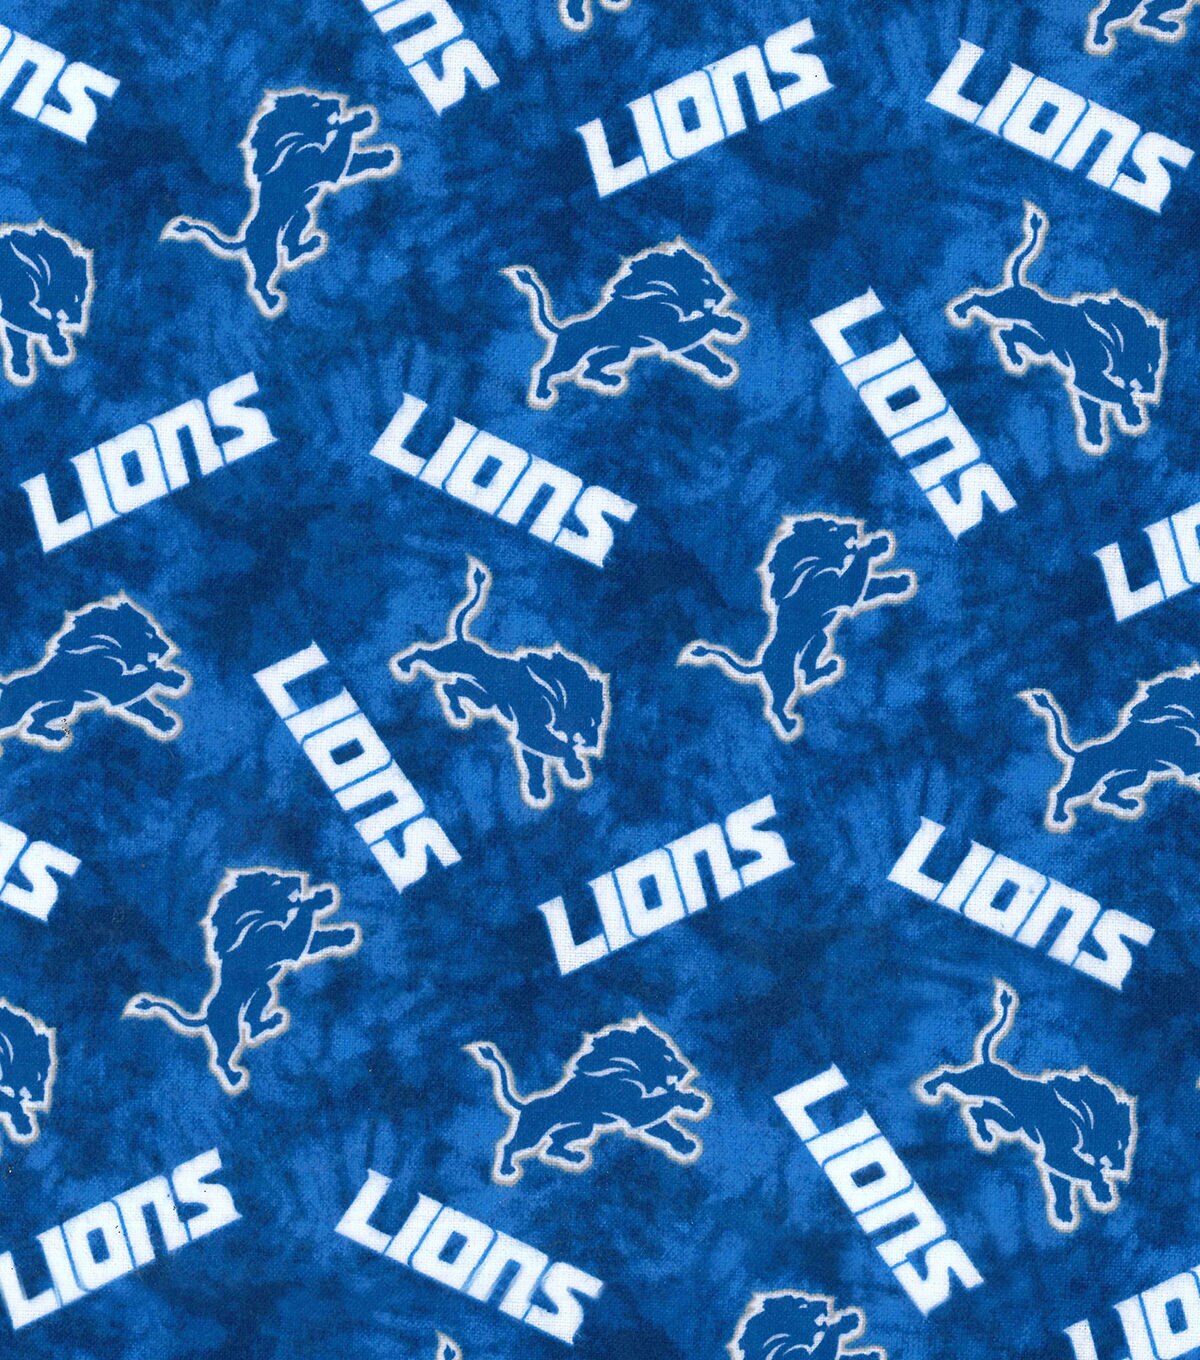 detroit lions flannel shirt